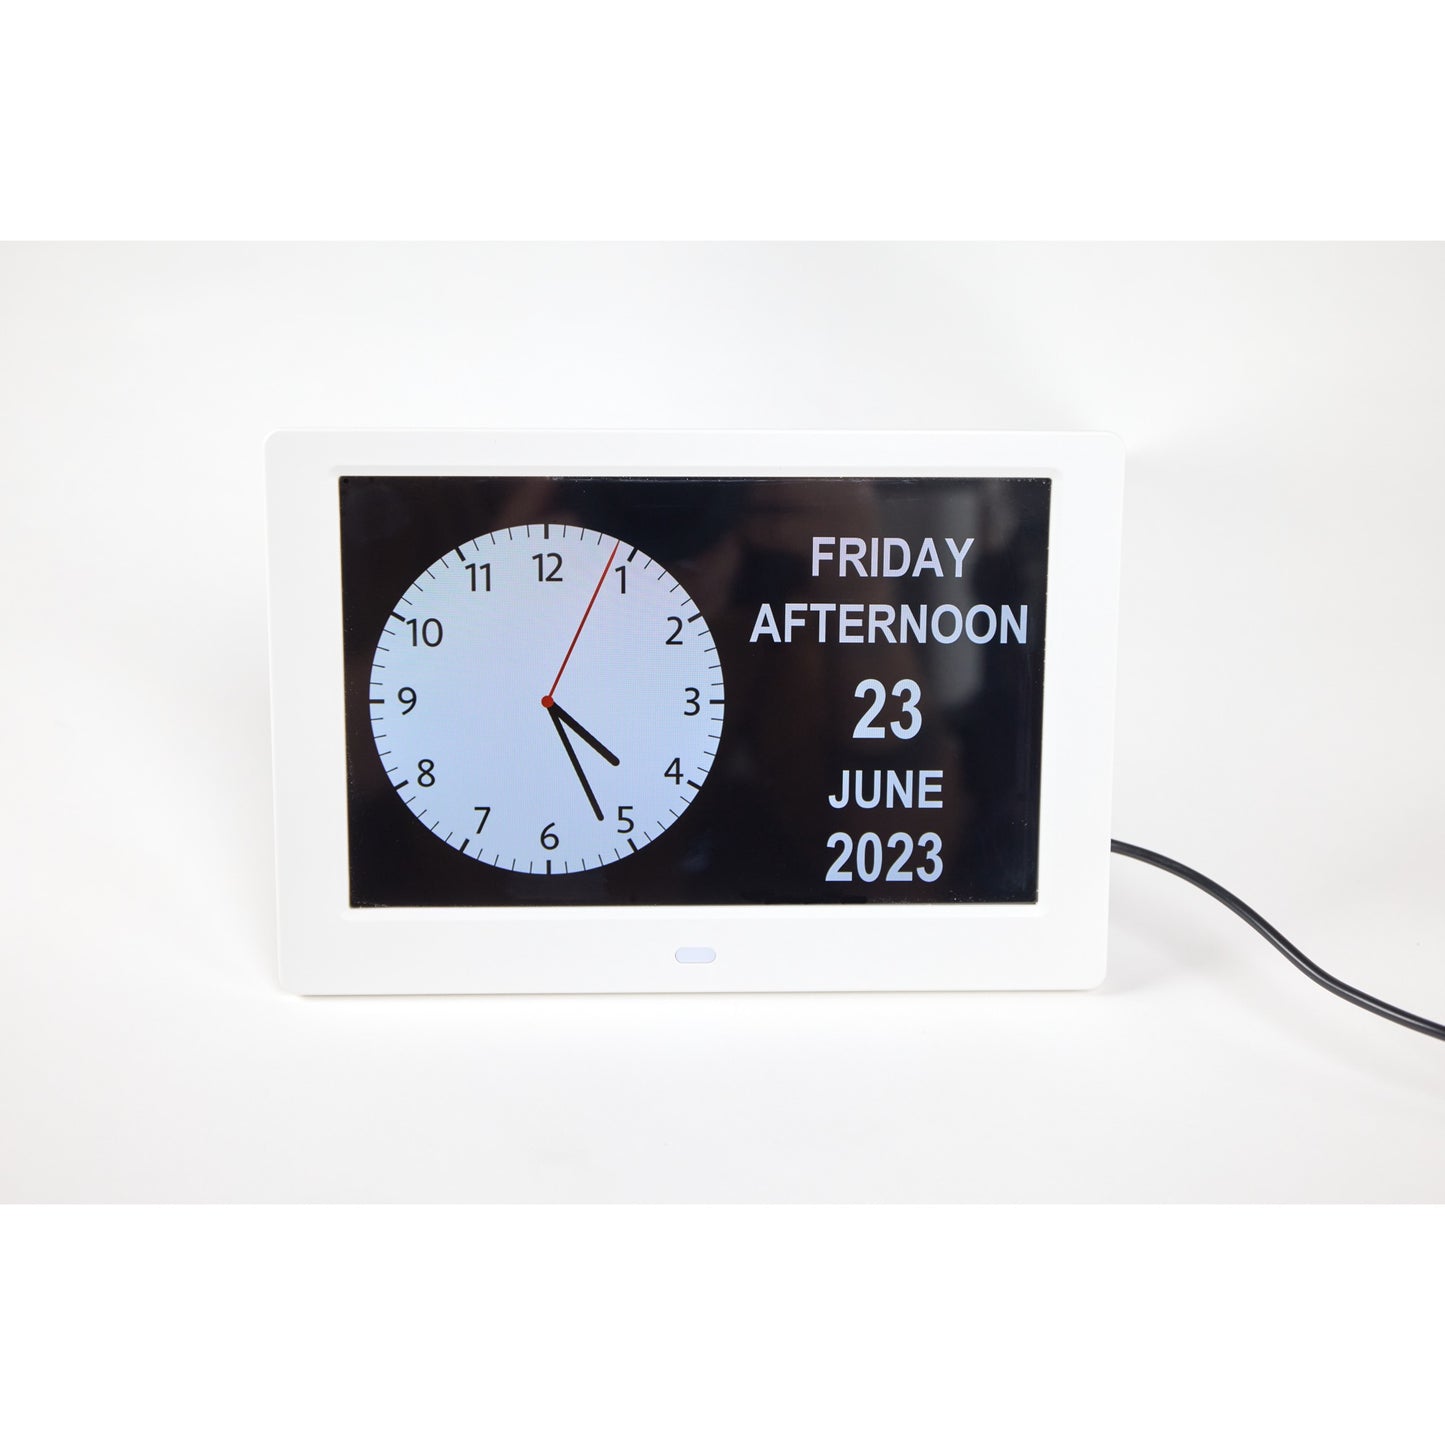 ALLY Clock 20cm Weiss - Uhr mit Wochentagen, Datum und Uhrzeit